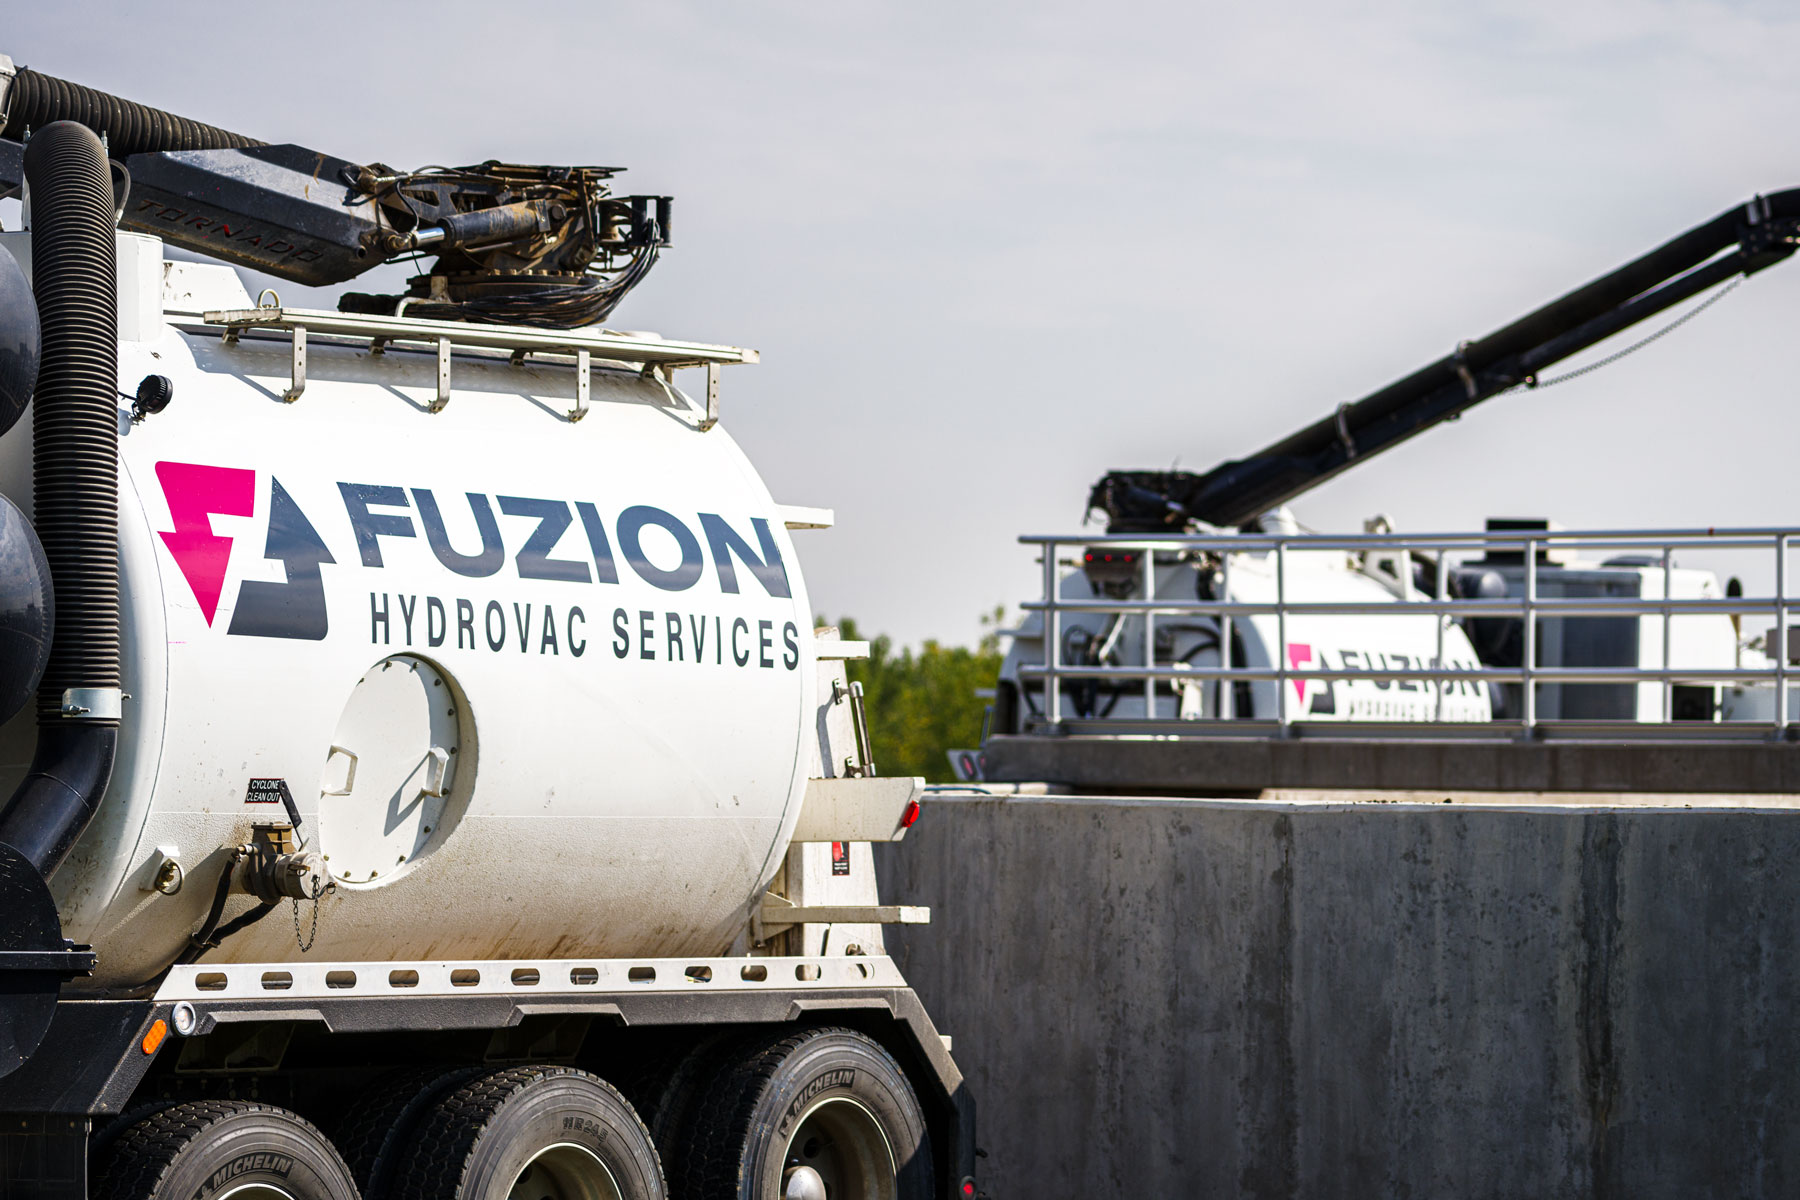 Hydrovac Services - Fuzion - Image